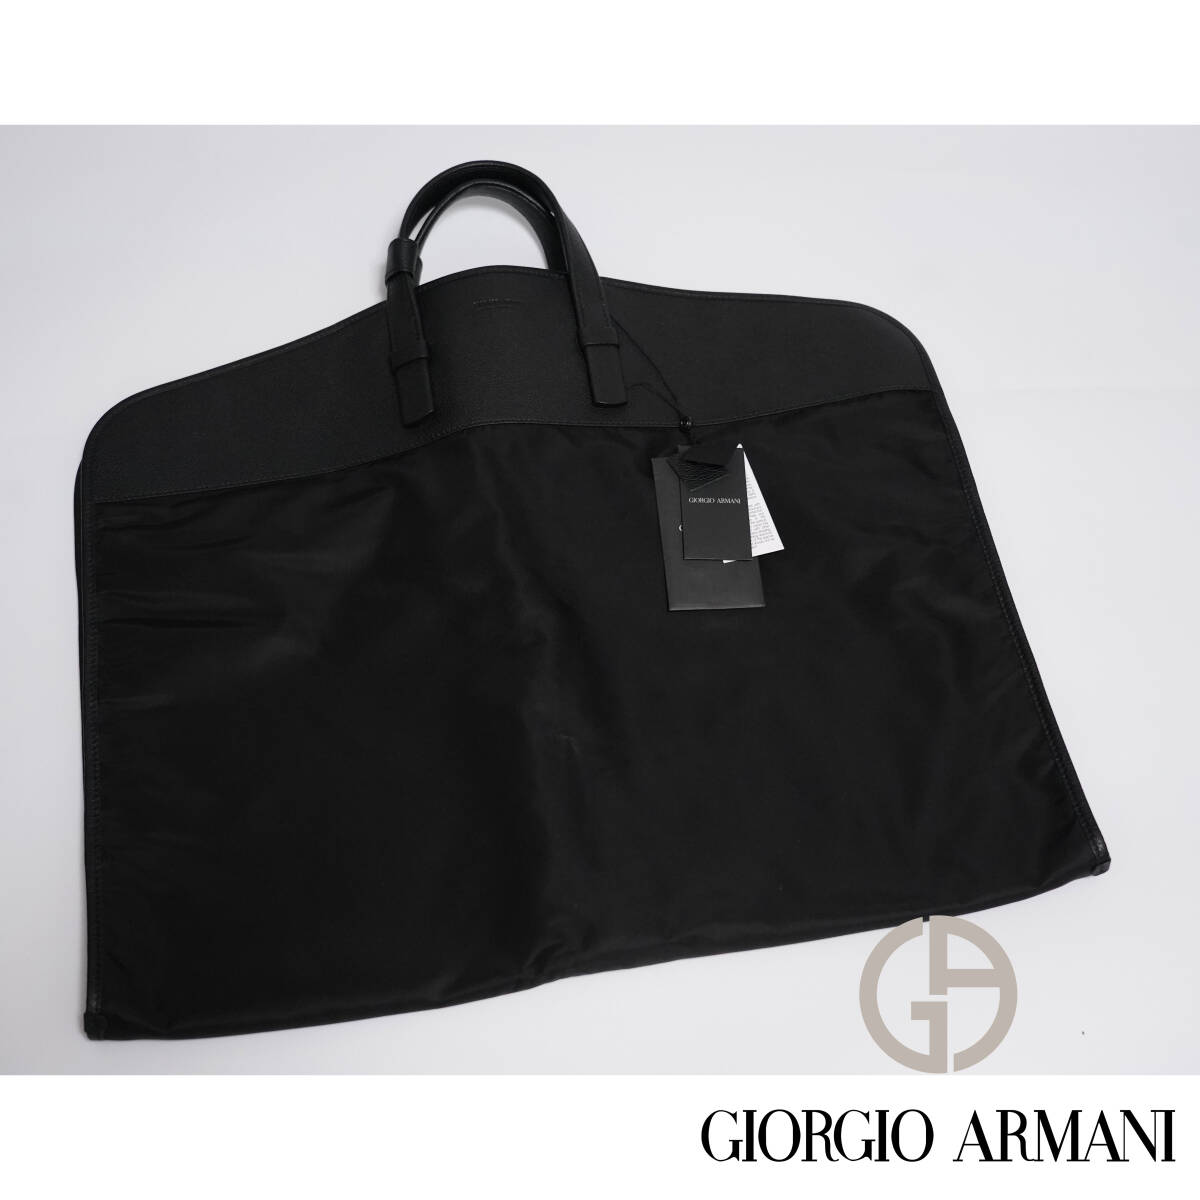  super . rare item top class leather suitcase dress cover joru geo Armani GIORGIO ARMANI collection item 